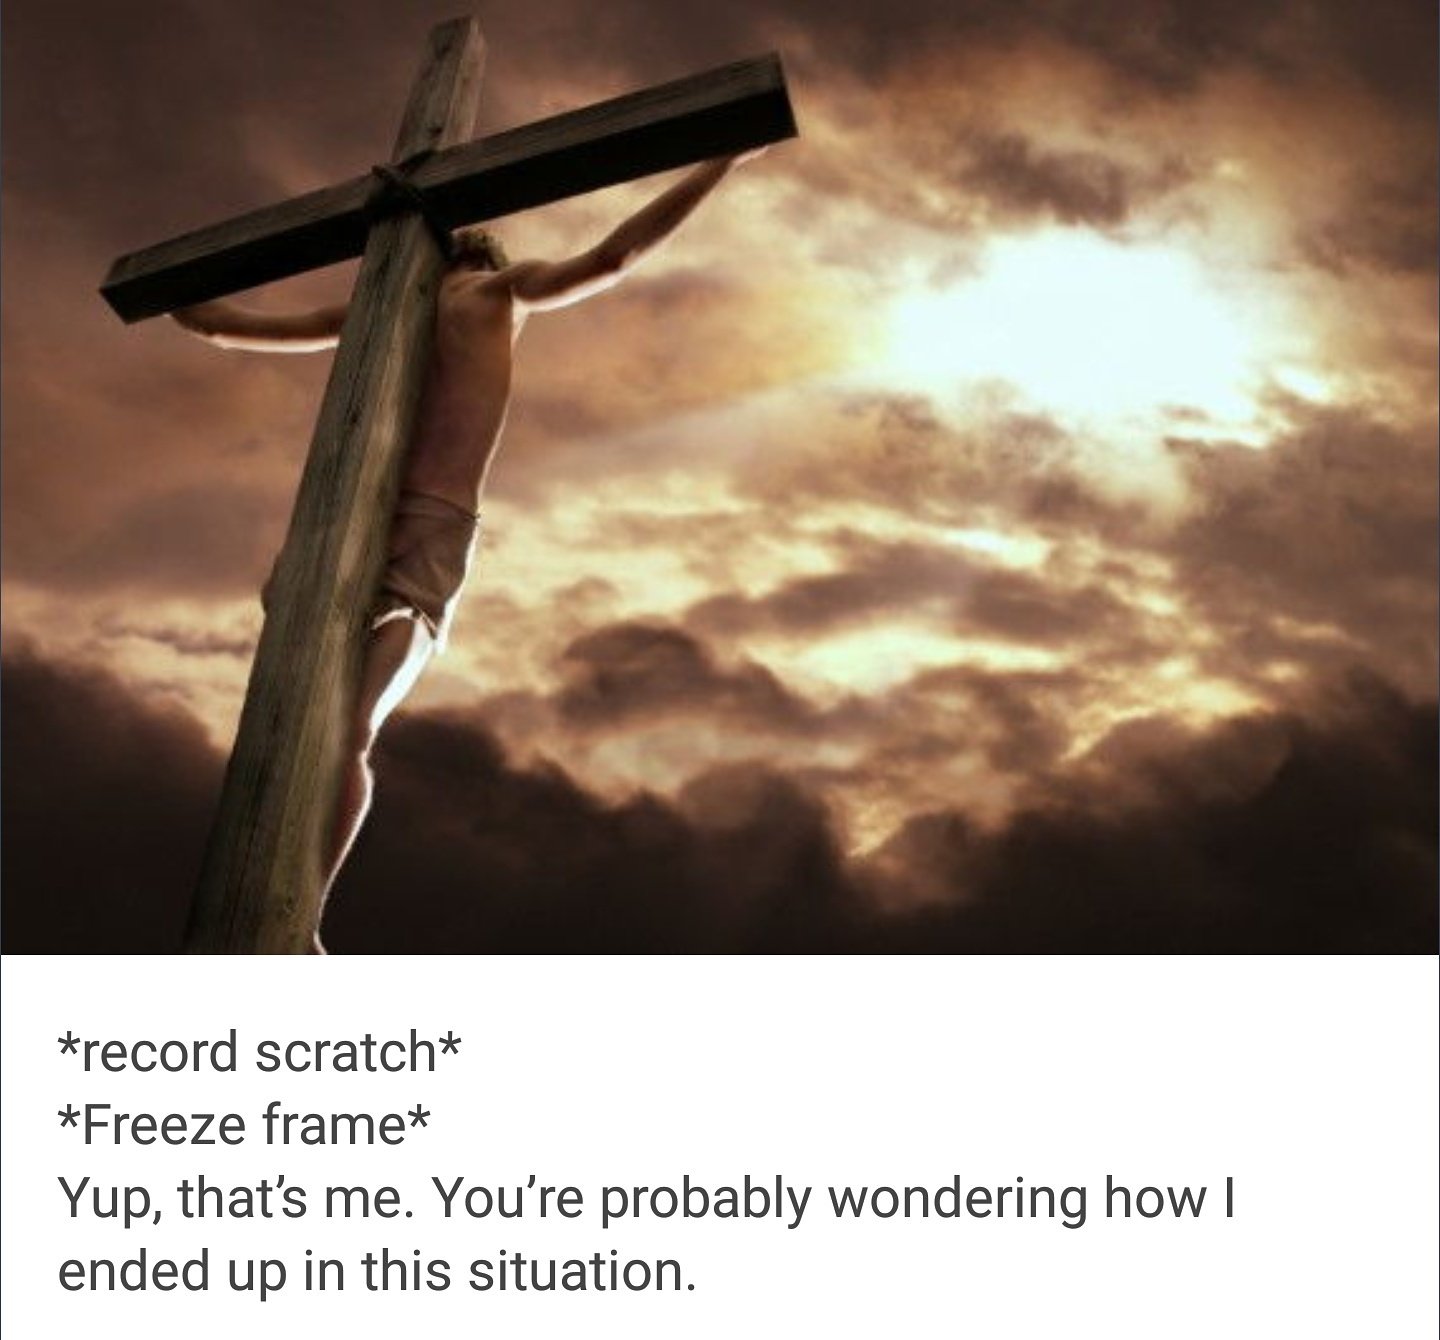 Иисус страдал